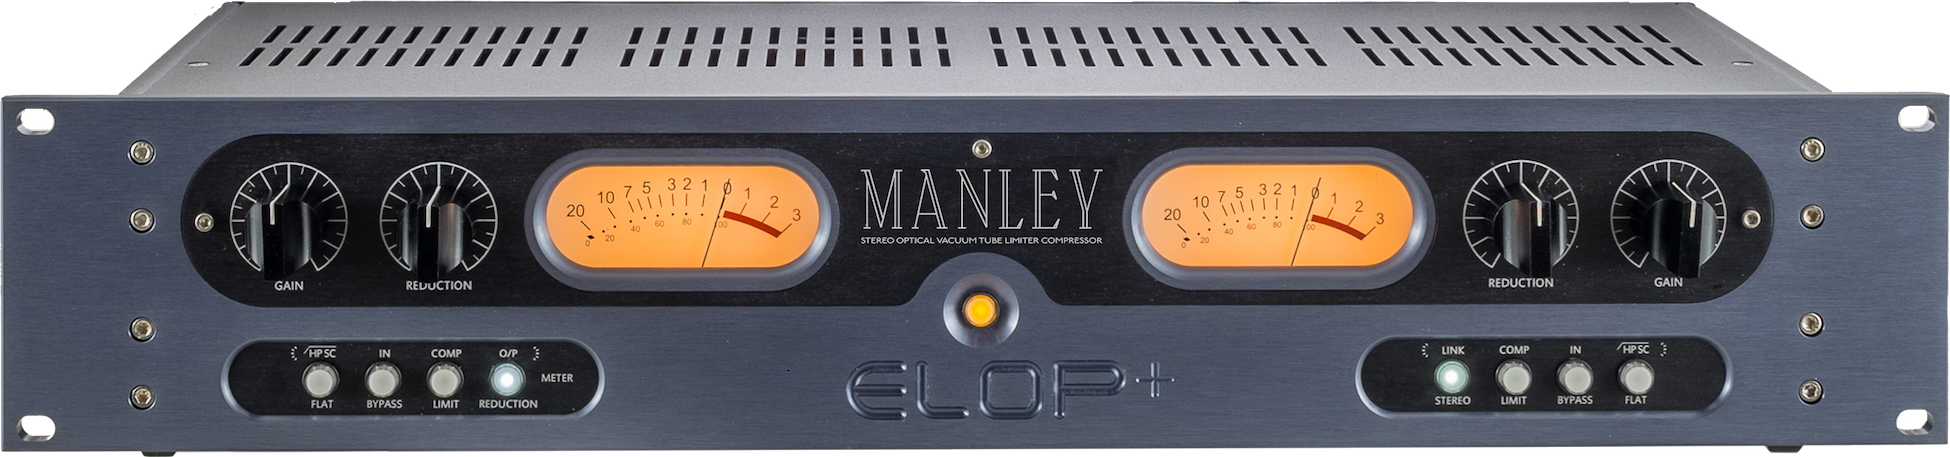 Manley Elop+ - Kompressor Limiter Gate - Variation 1